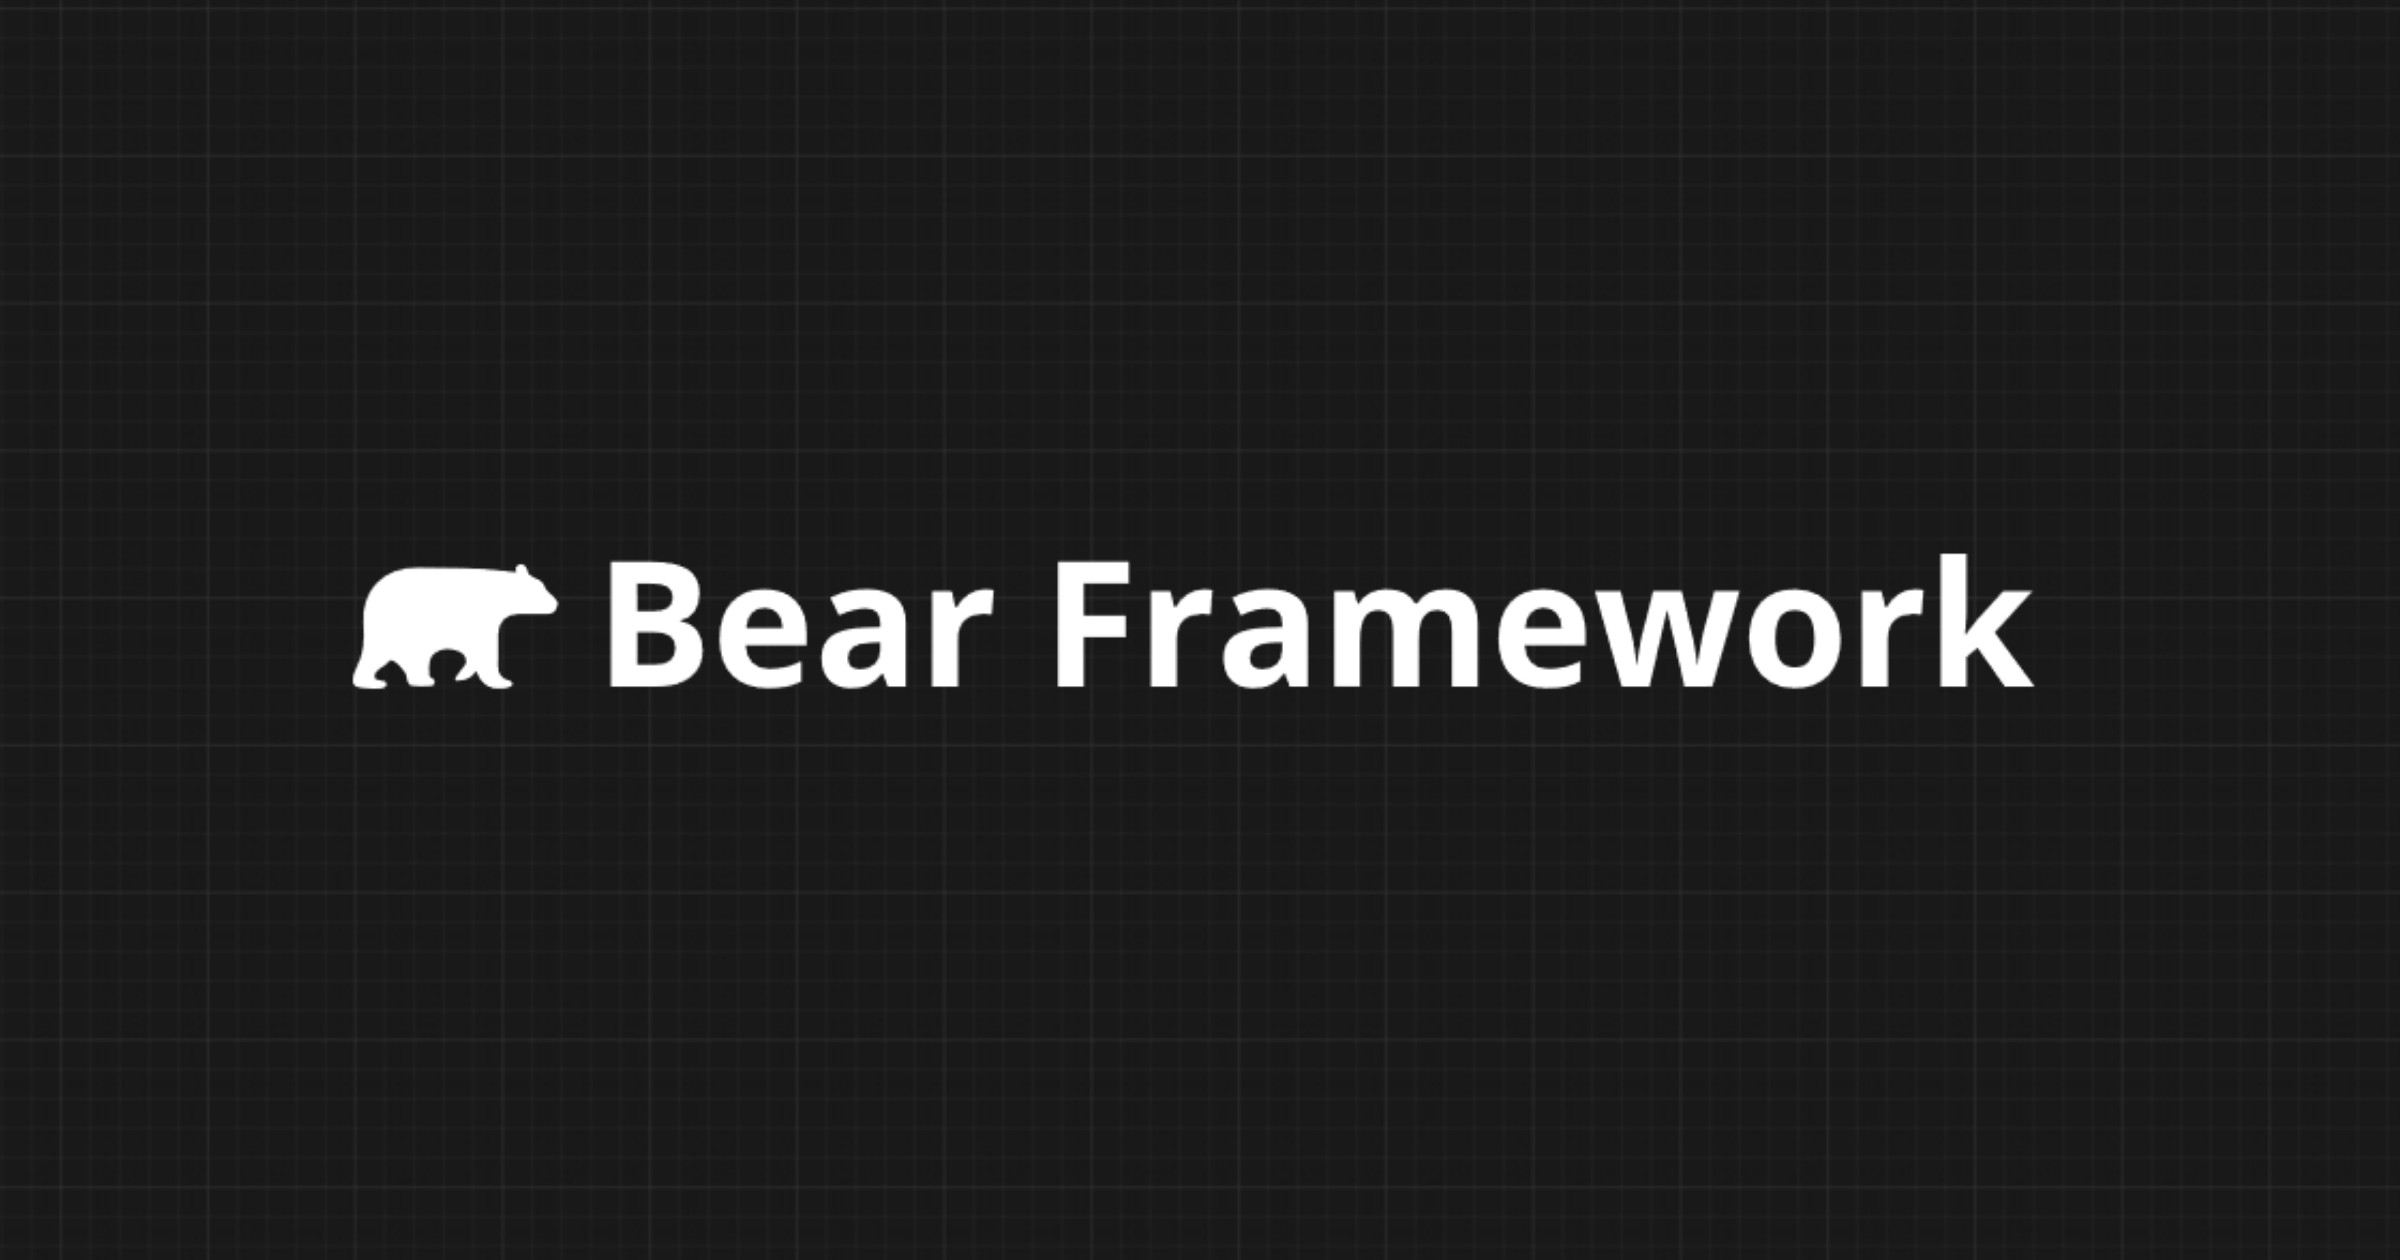 Bear Framework is an open-sourced PHP framework